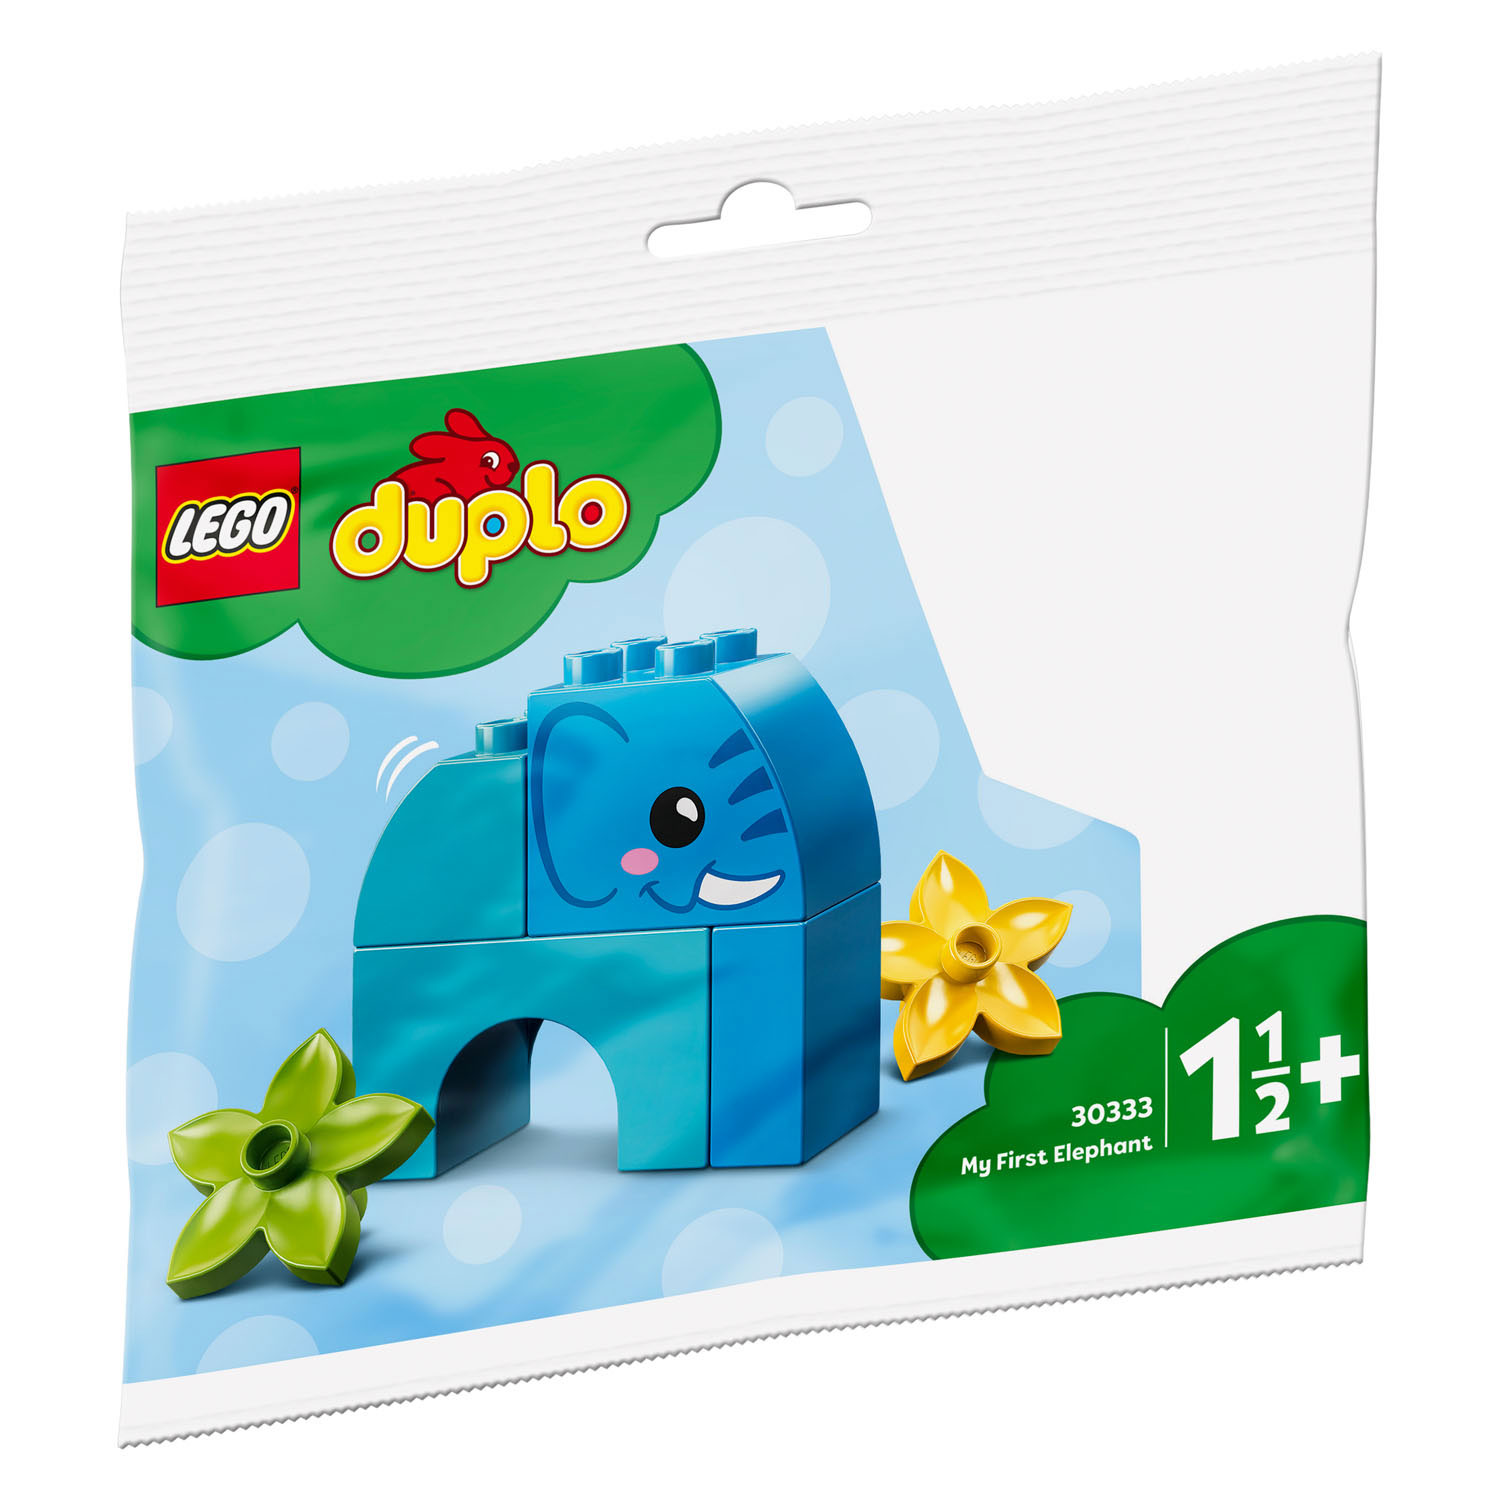 30333 LEGO Duplo Mon premier éléphant